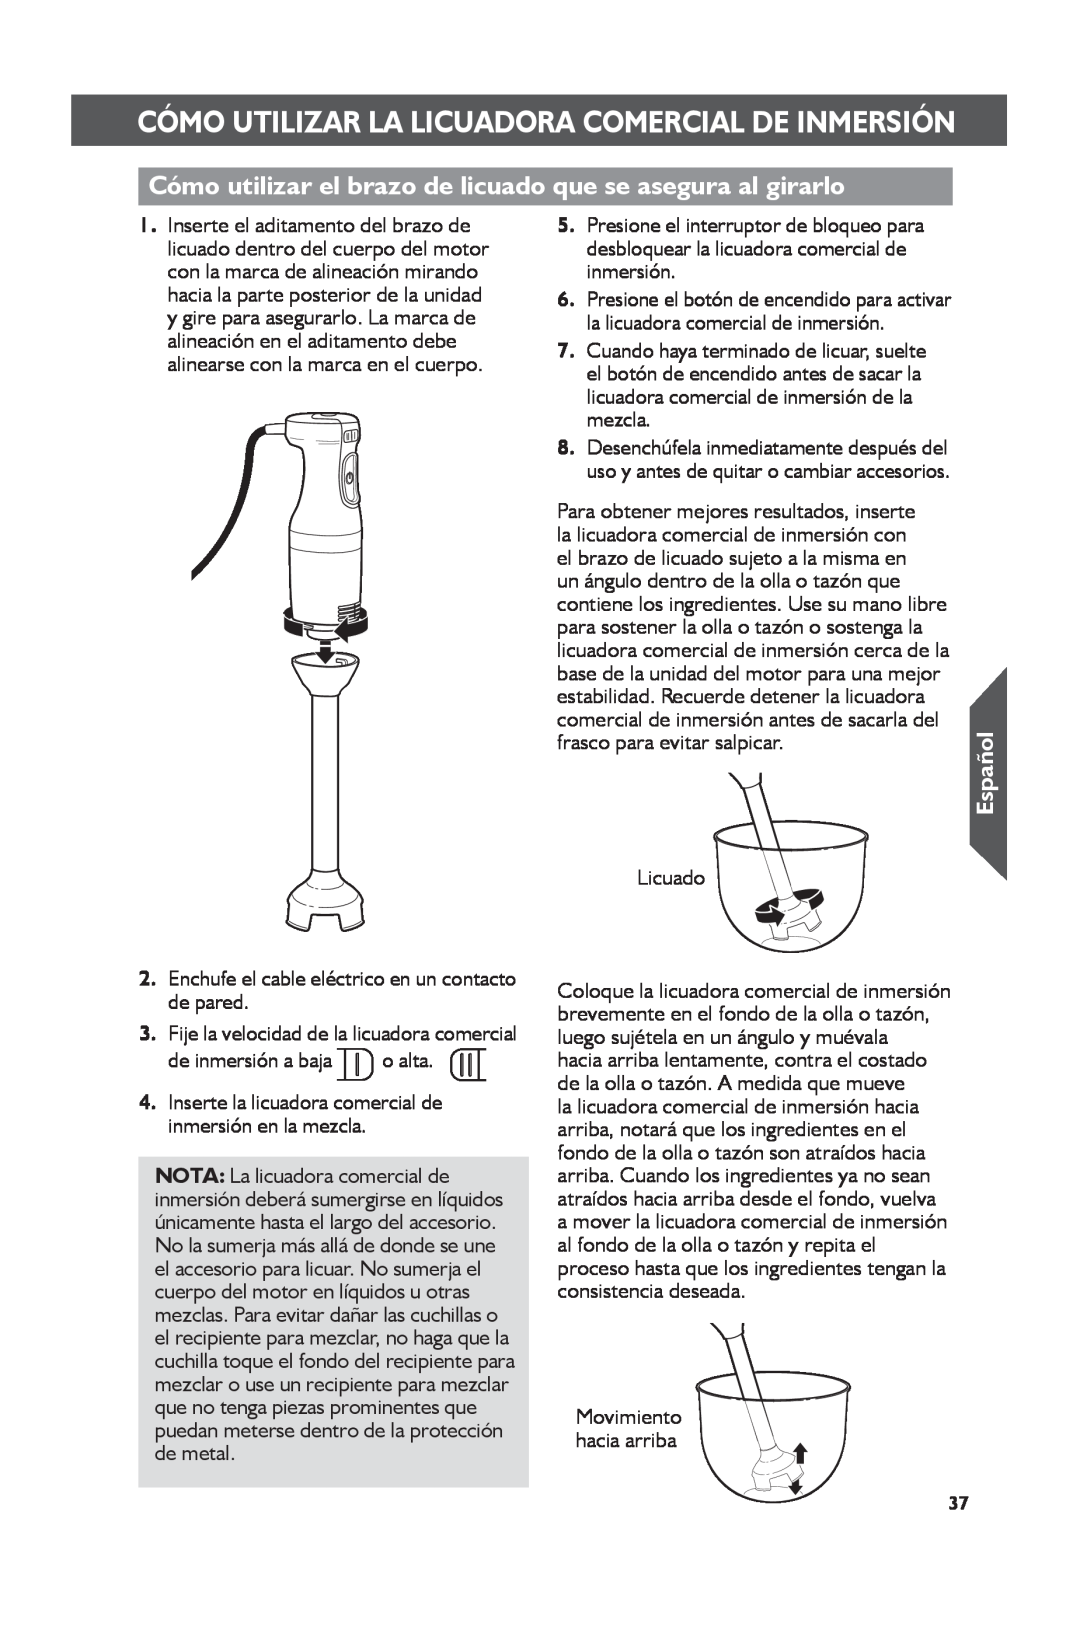 KitchenAid KHBC210 manual Cómo utilizar el brazo de licuado que se asegura al girarlo, Español, de inmersión a baja o alta 